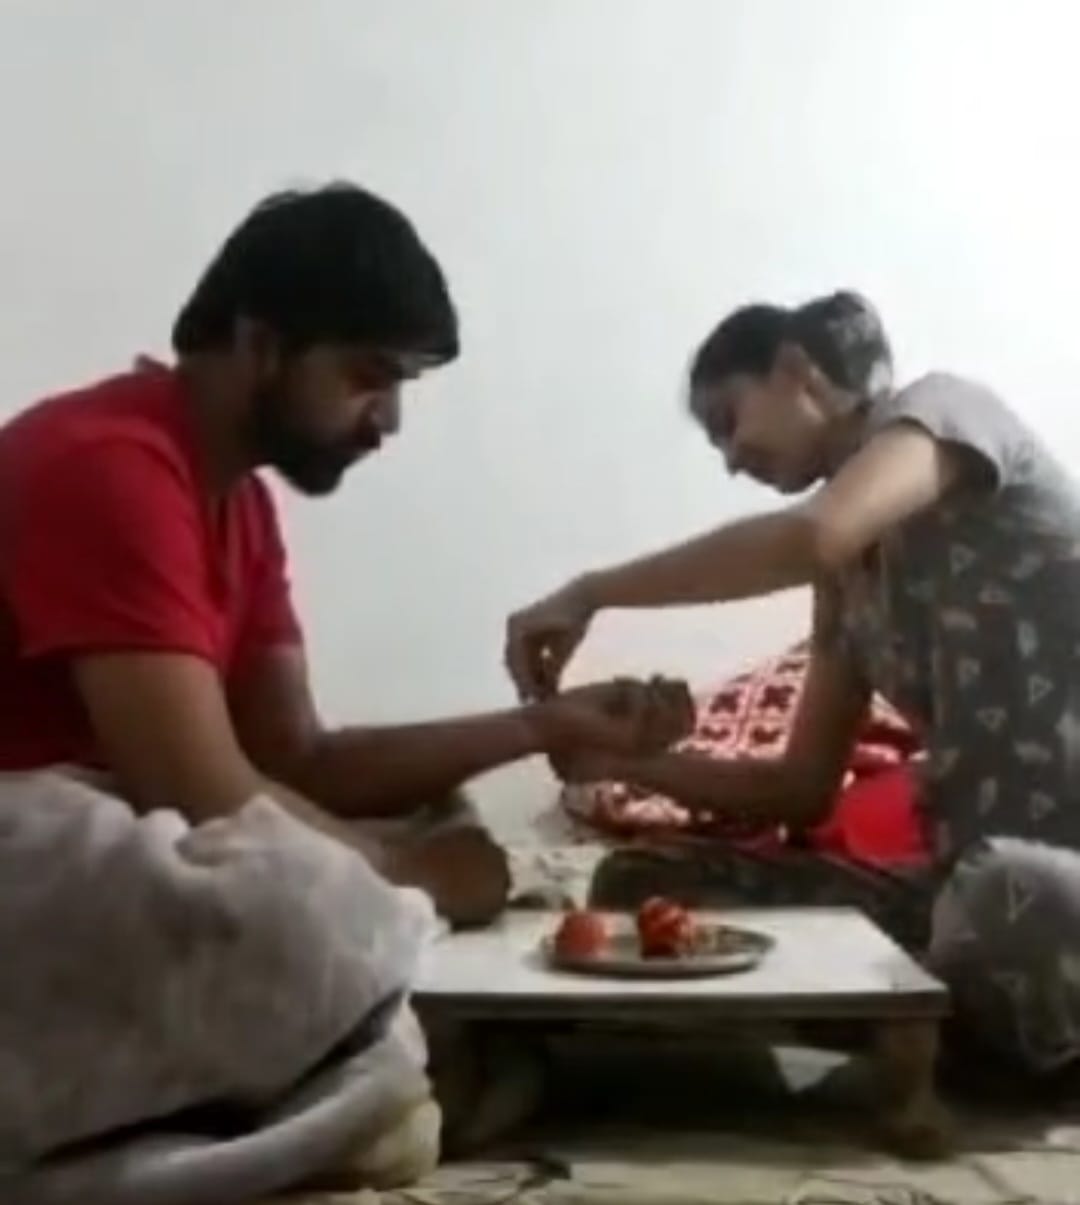 kanker woman ties rakhi to husband